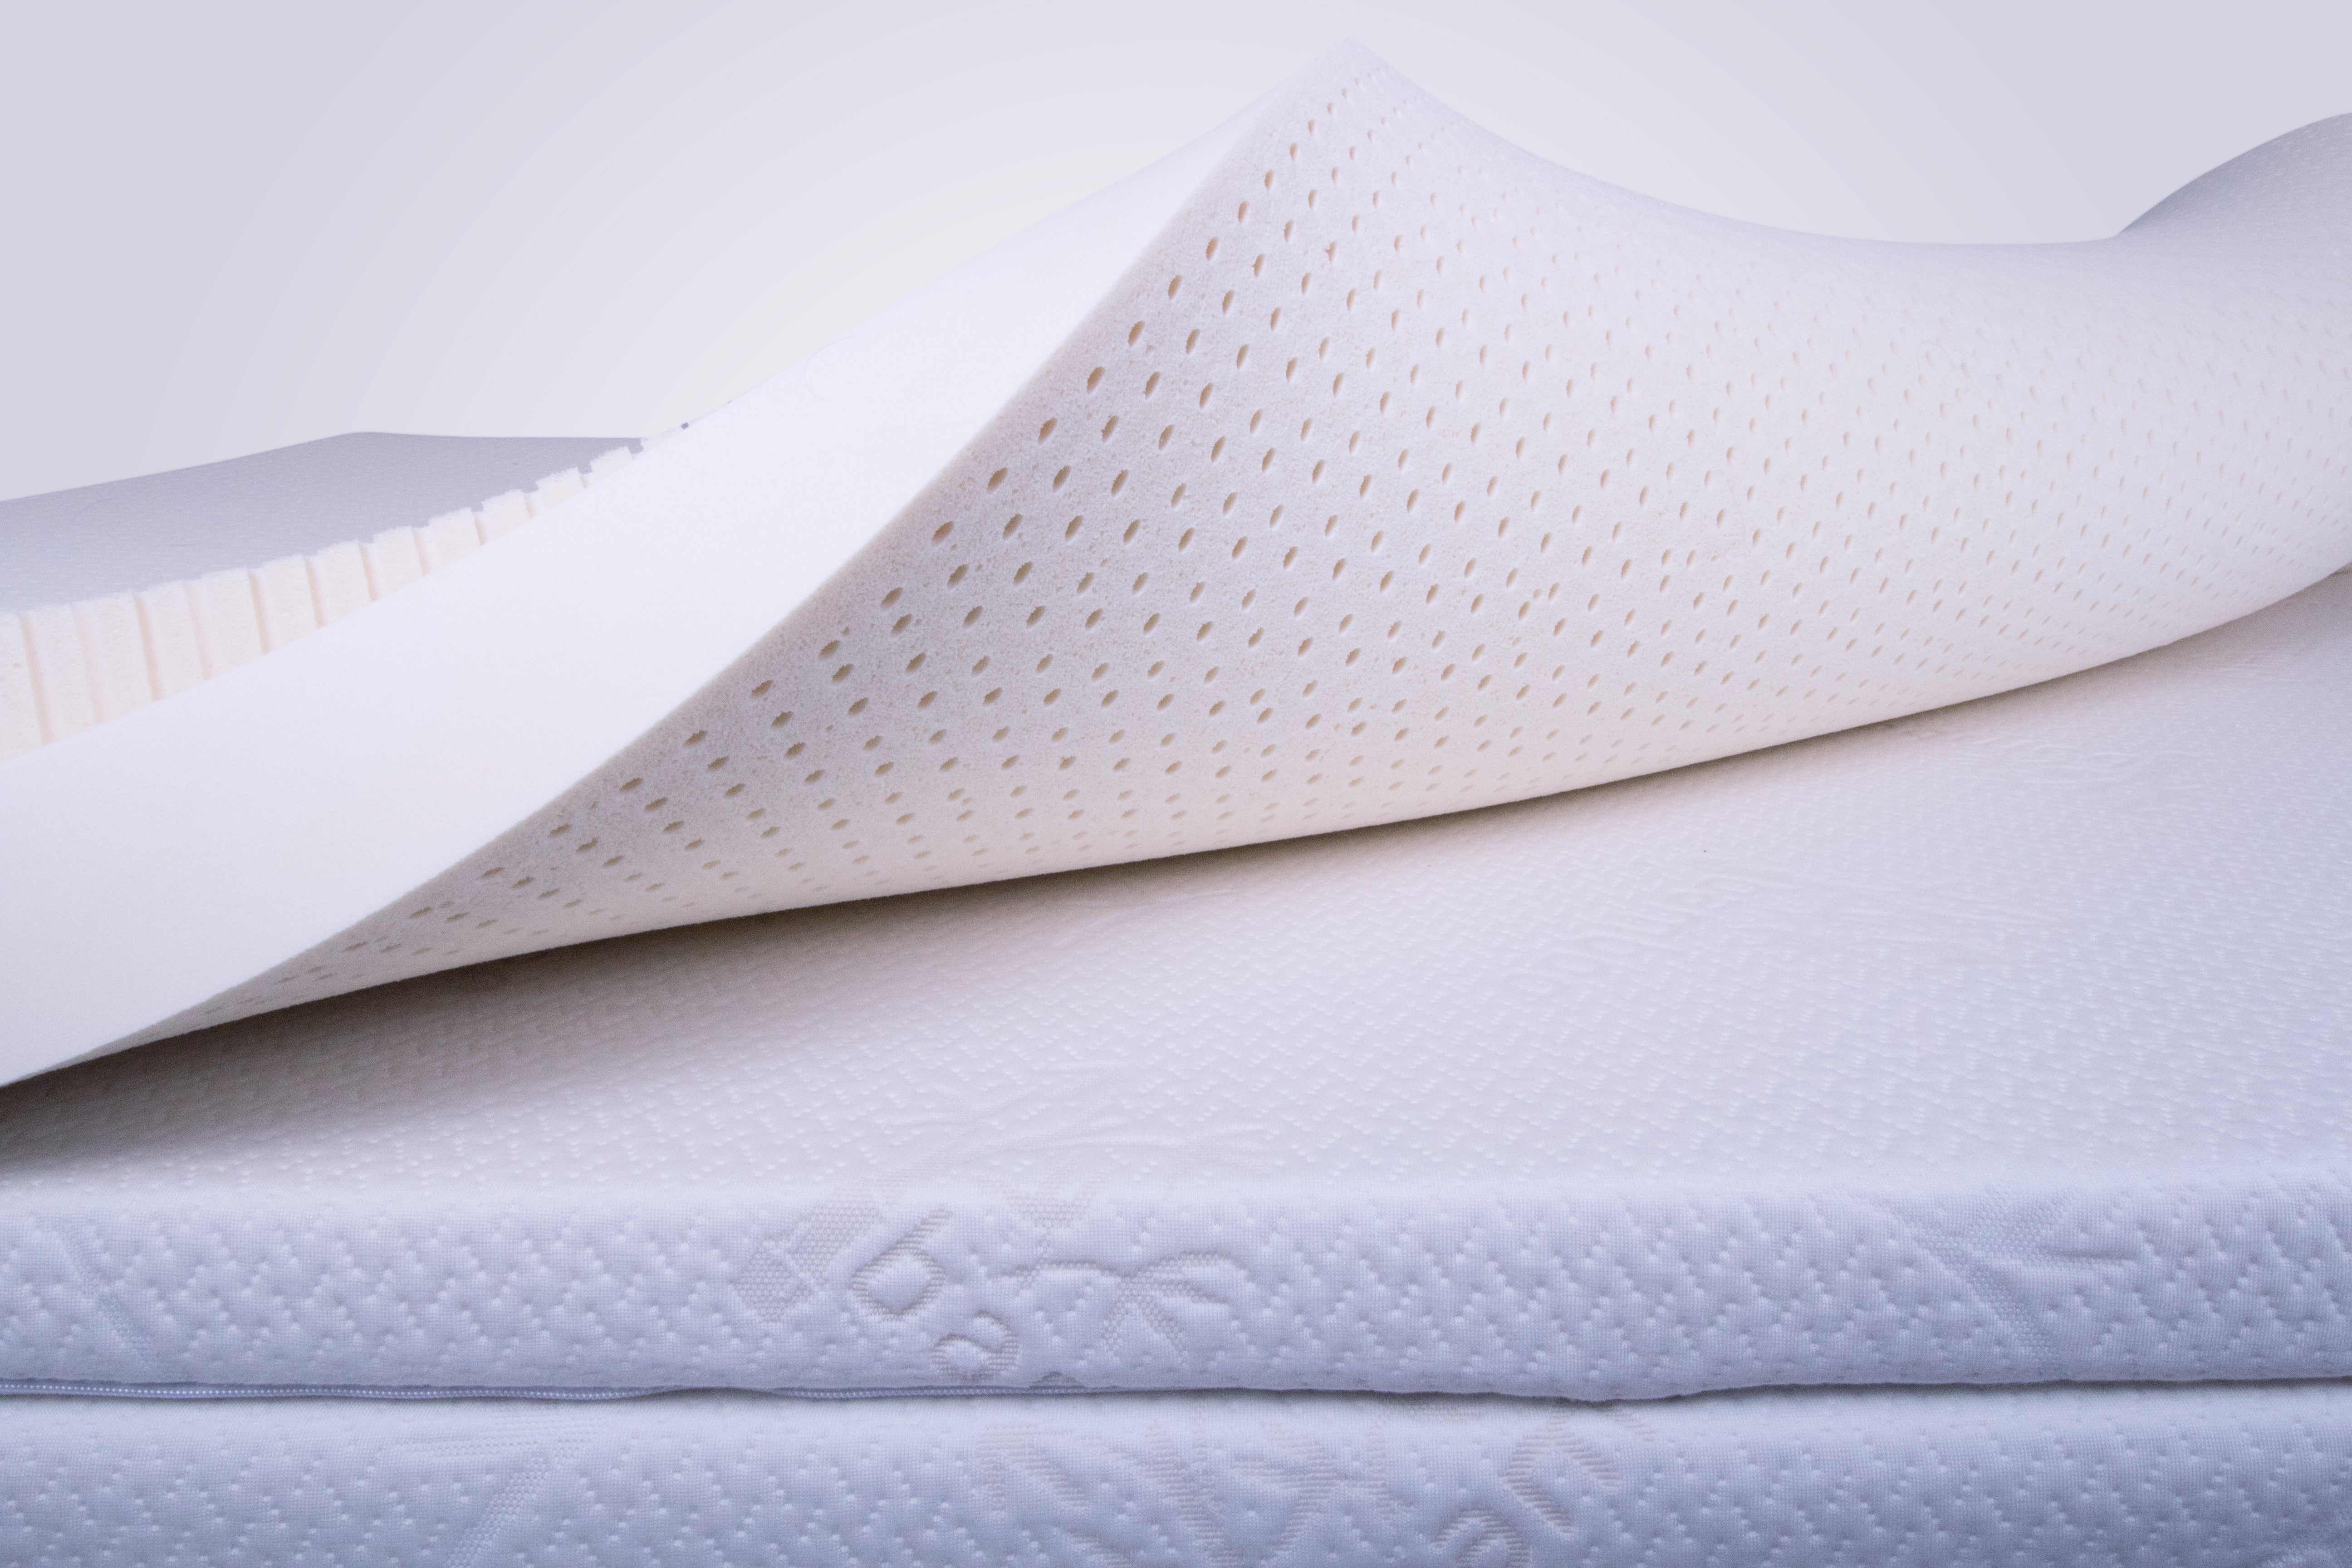 mayer's bedding latex mattress reviews